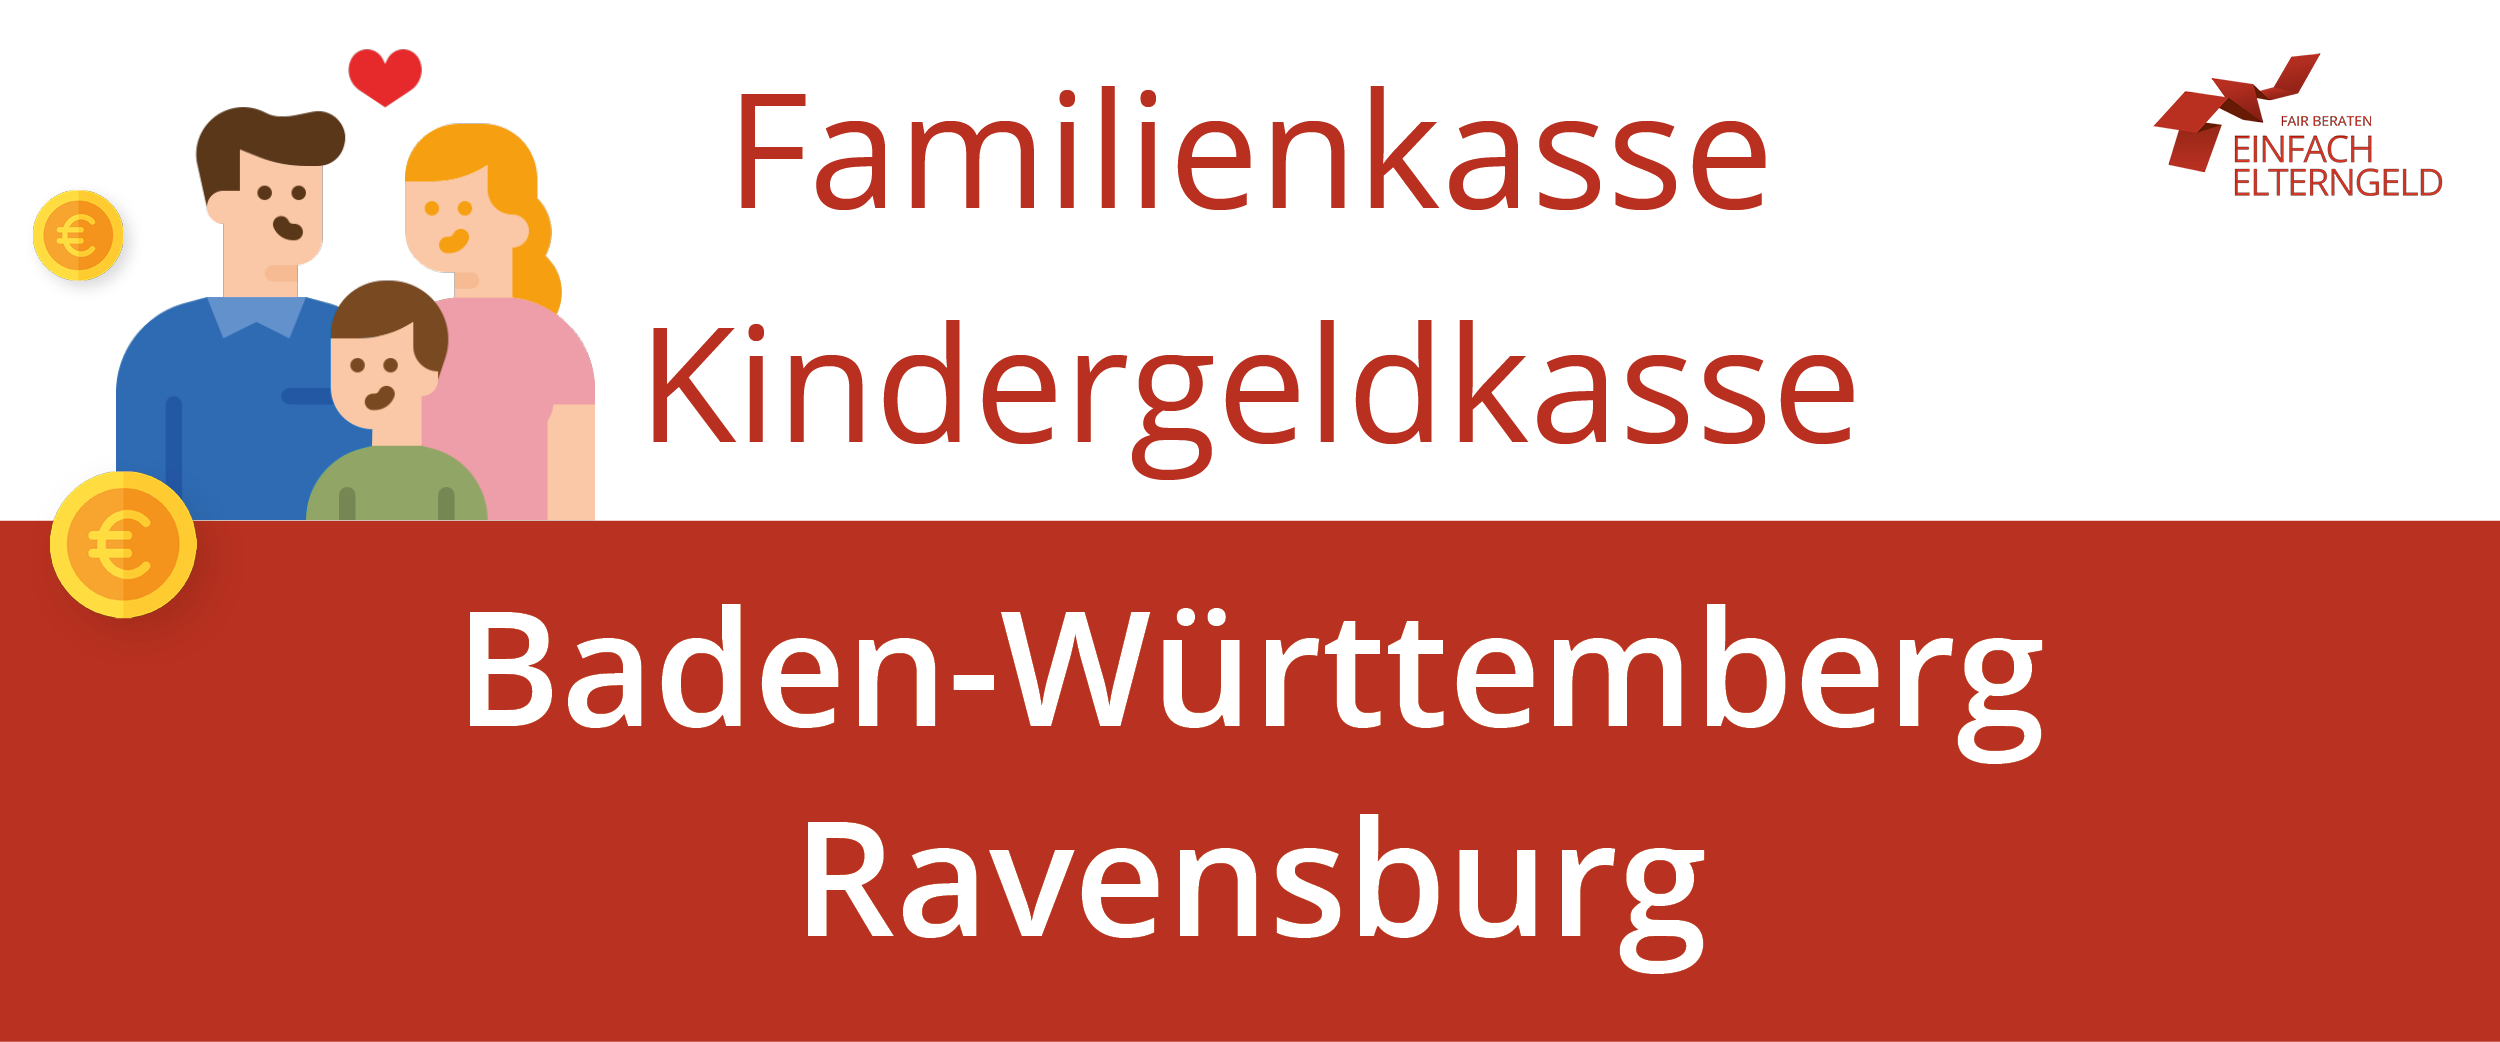 Familienkasse Kindergeldkasse Baden-Württemberg Ravensburg - So erreichen Sie Ihre Familienkasse.